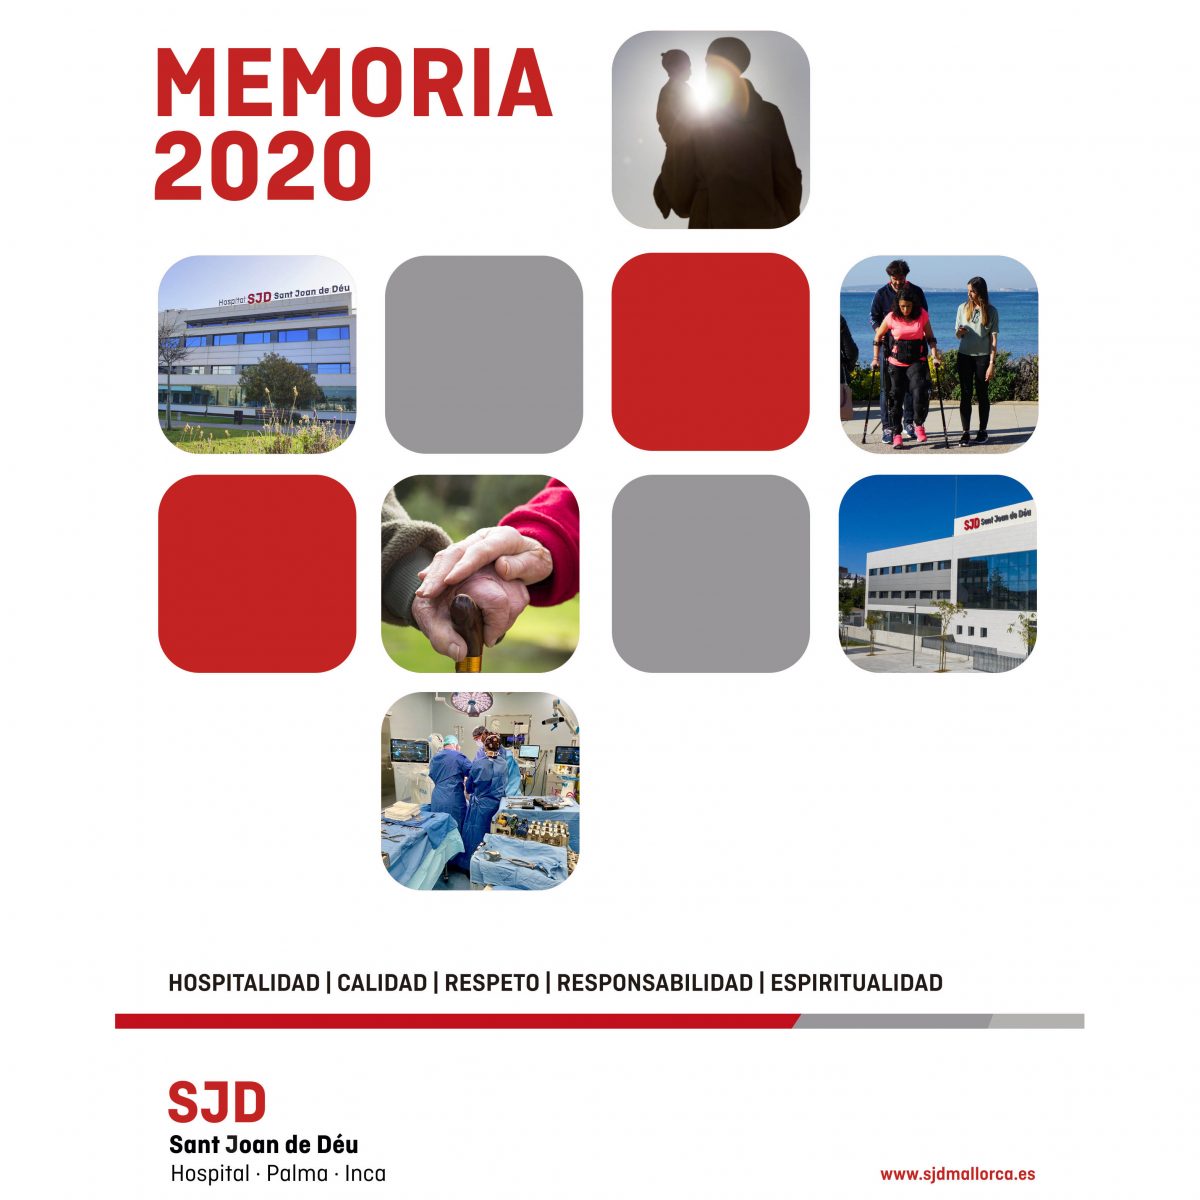 Memoria-2020-Hospital-SJD-Palma-·-Inca-cuadrado-1200x1200.jpg